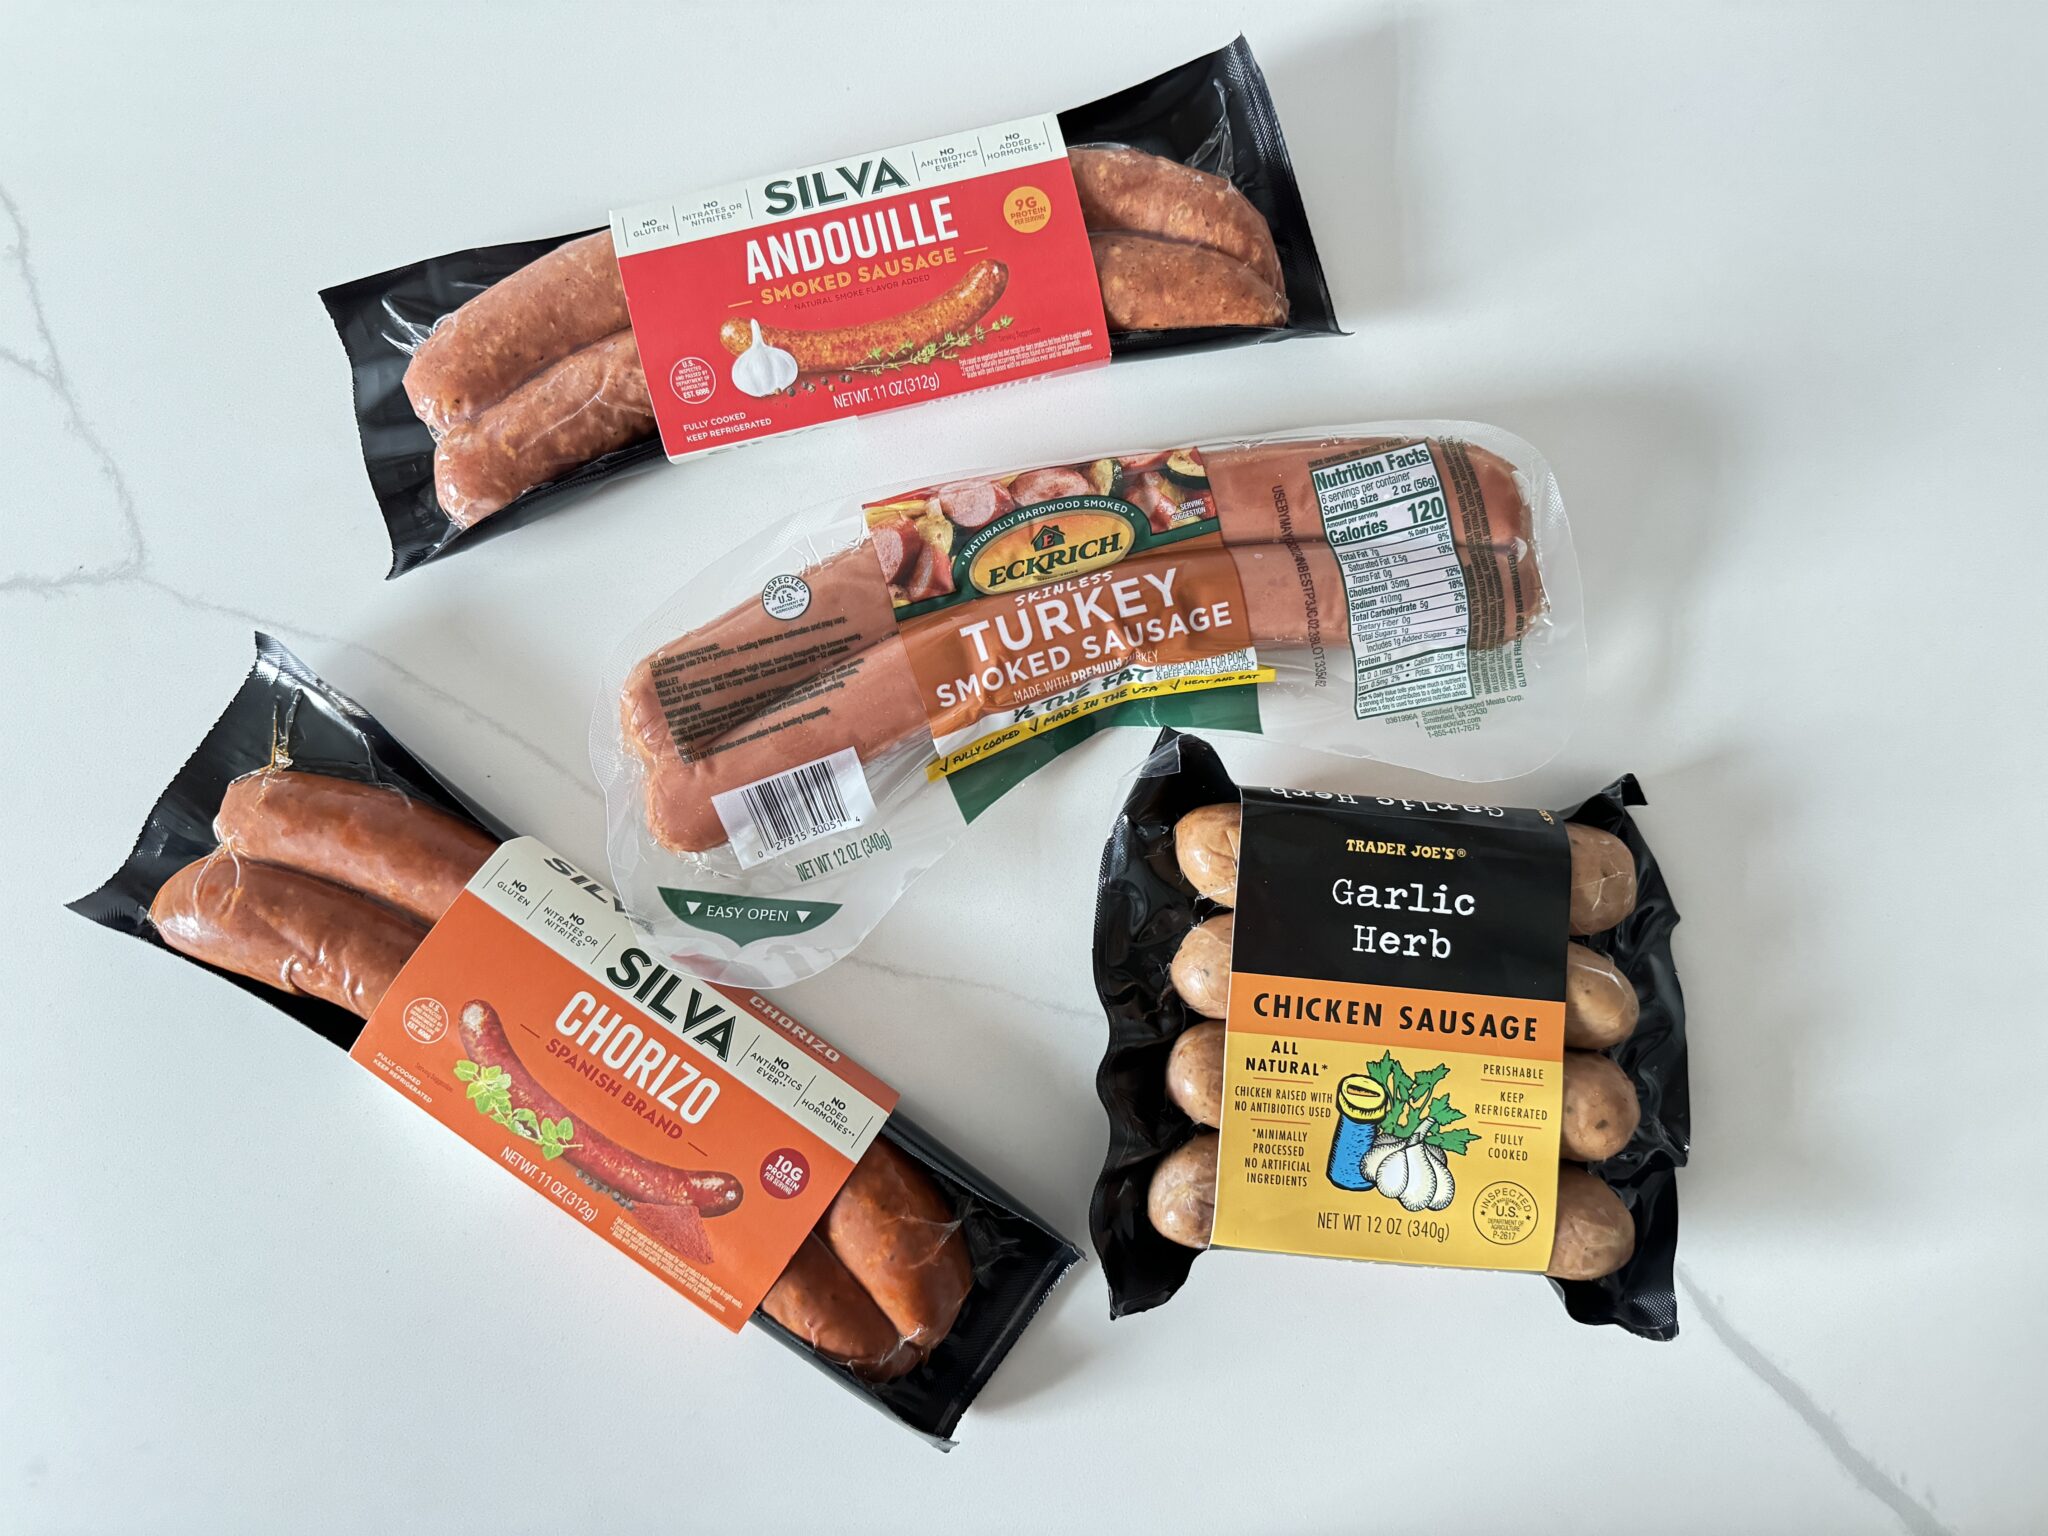 4 kinds of sausage